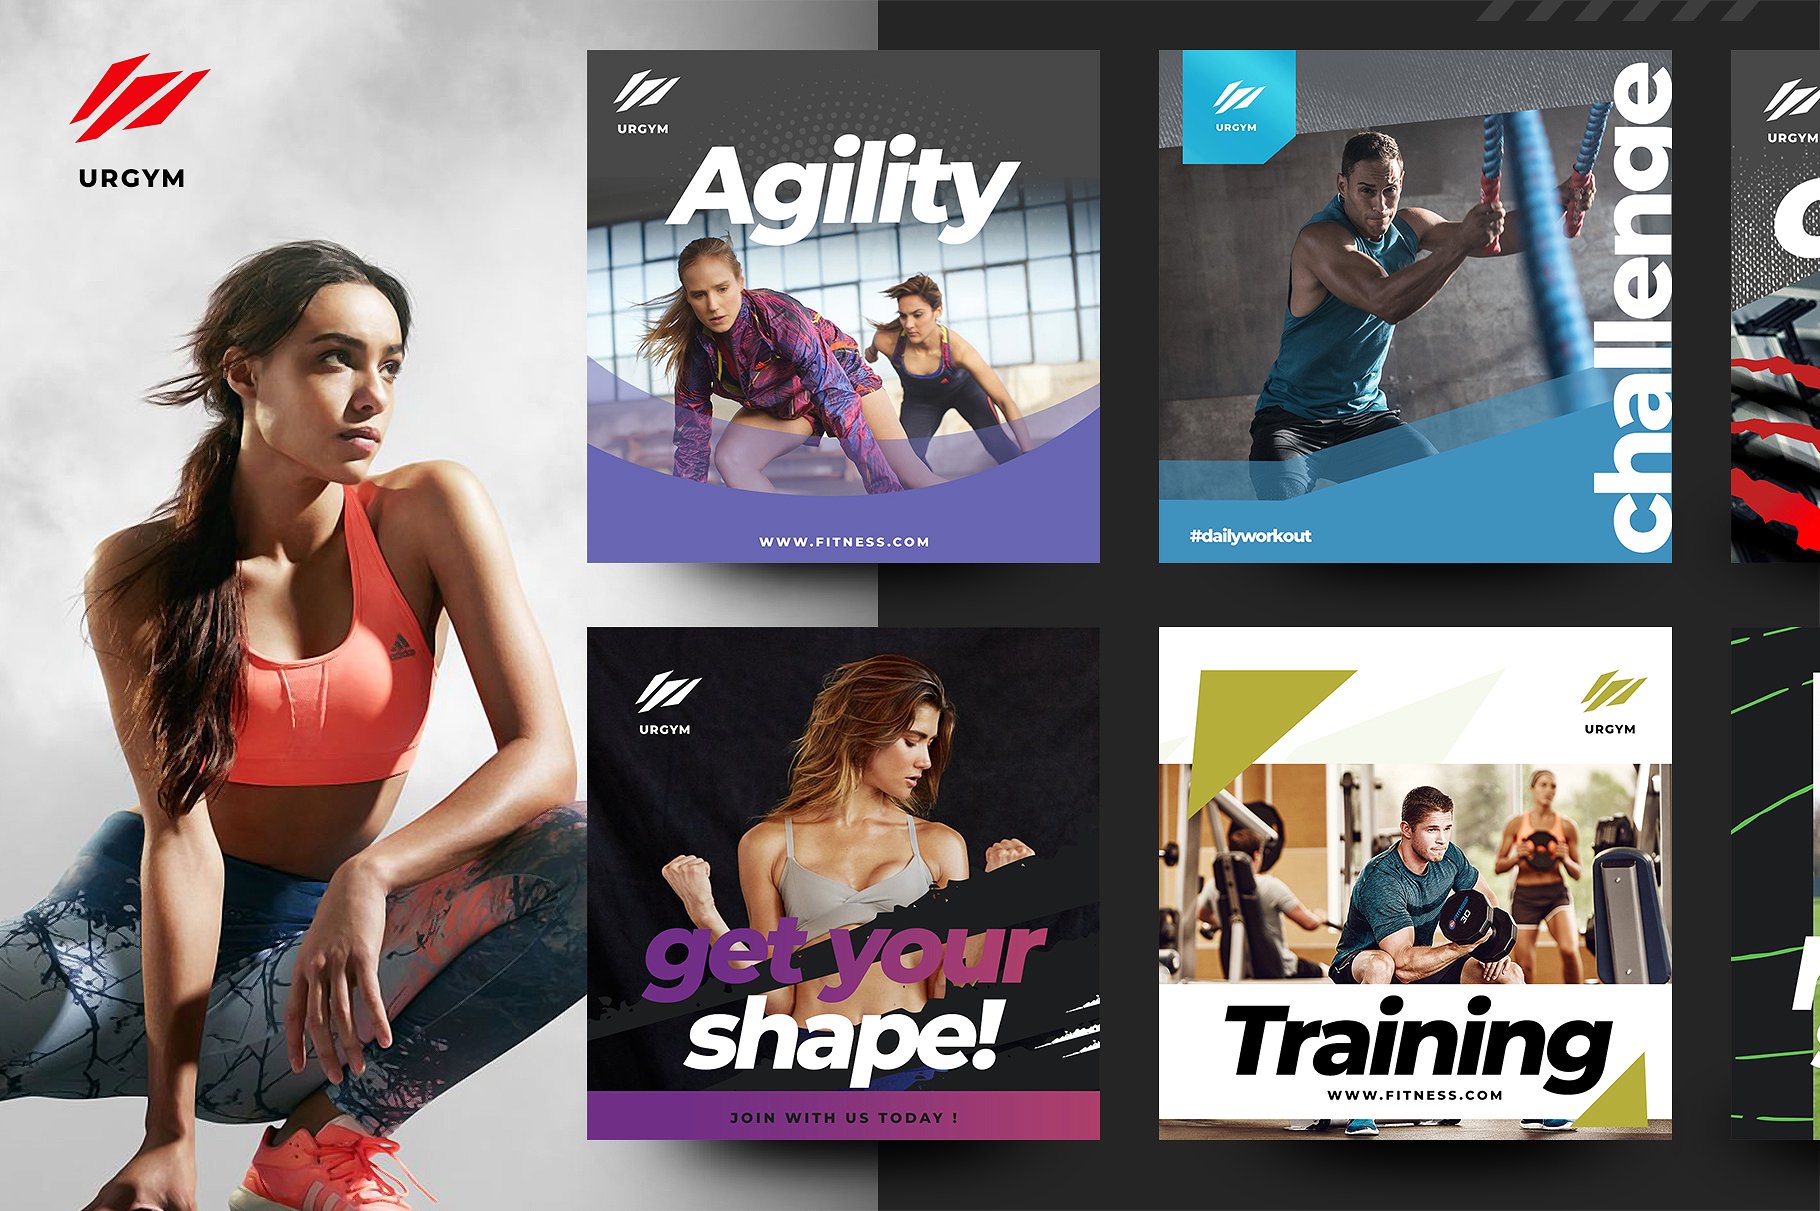 时尚健身&健身器材的instagram社交媒体模板第一素材精选 Fitness & Gym instagram pack 2.0 [psd]插图(1)